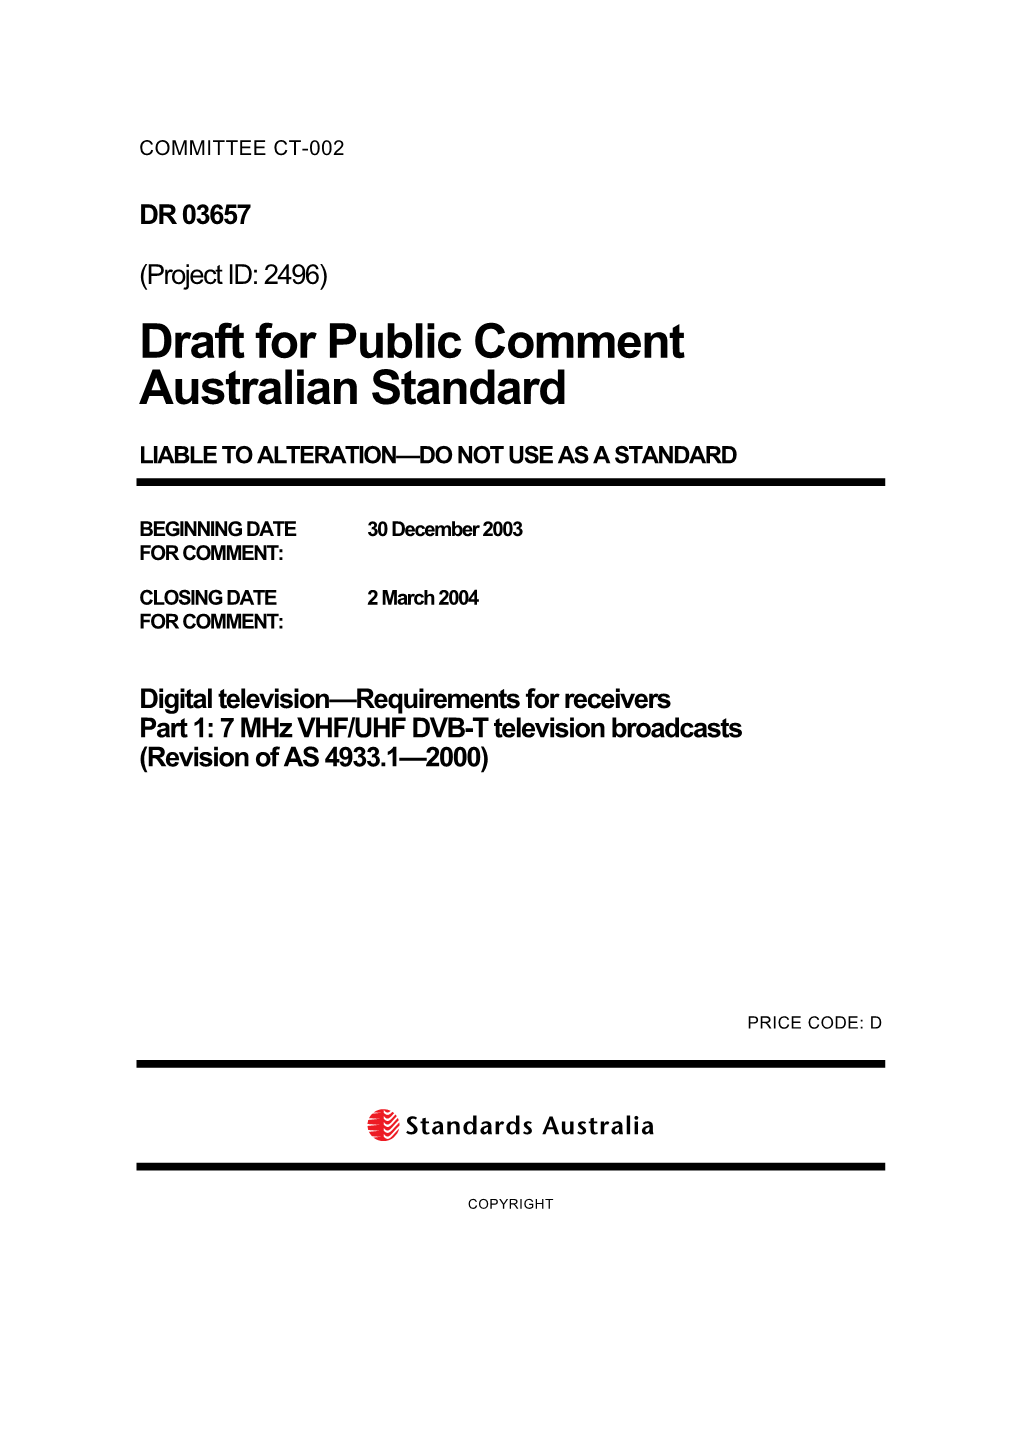 Draft for Public Comment Australian Standard